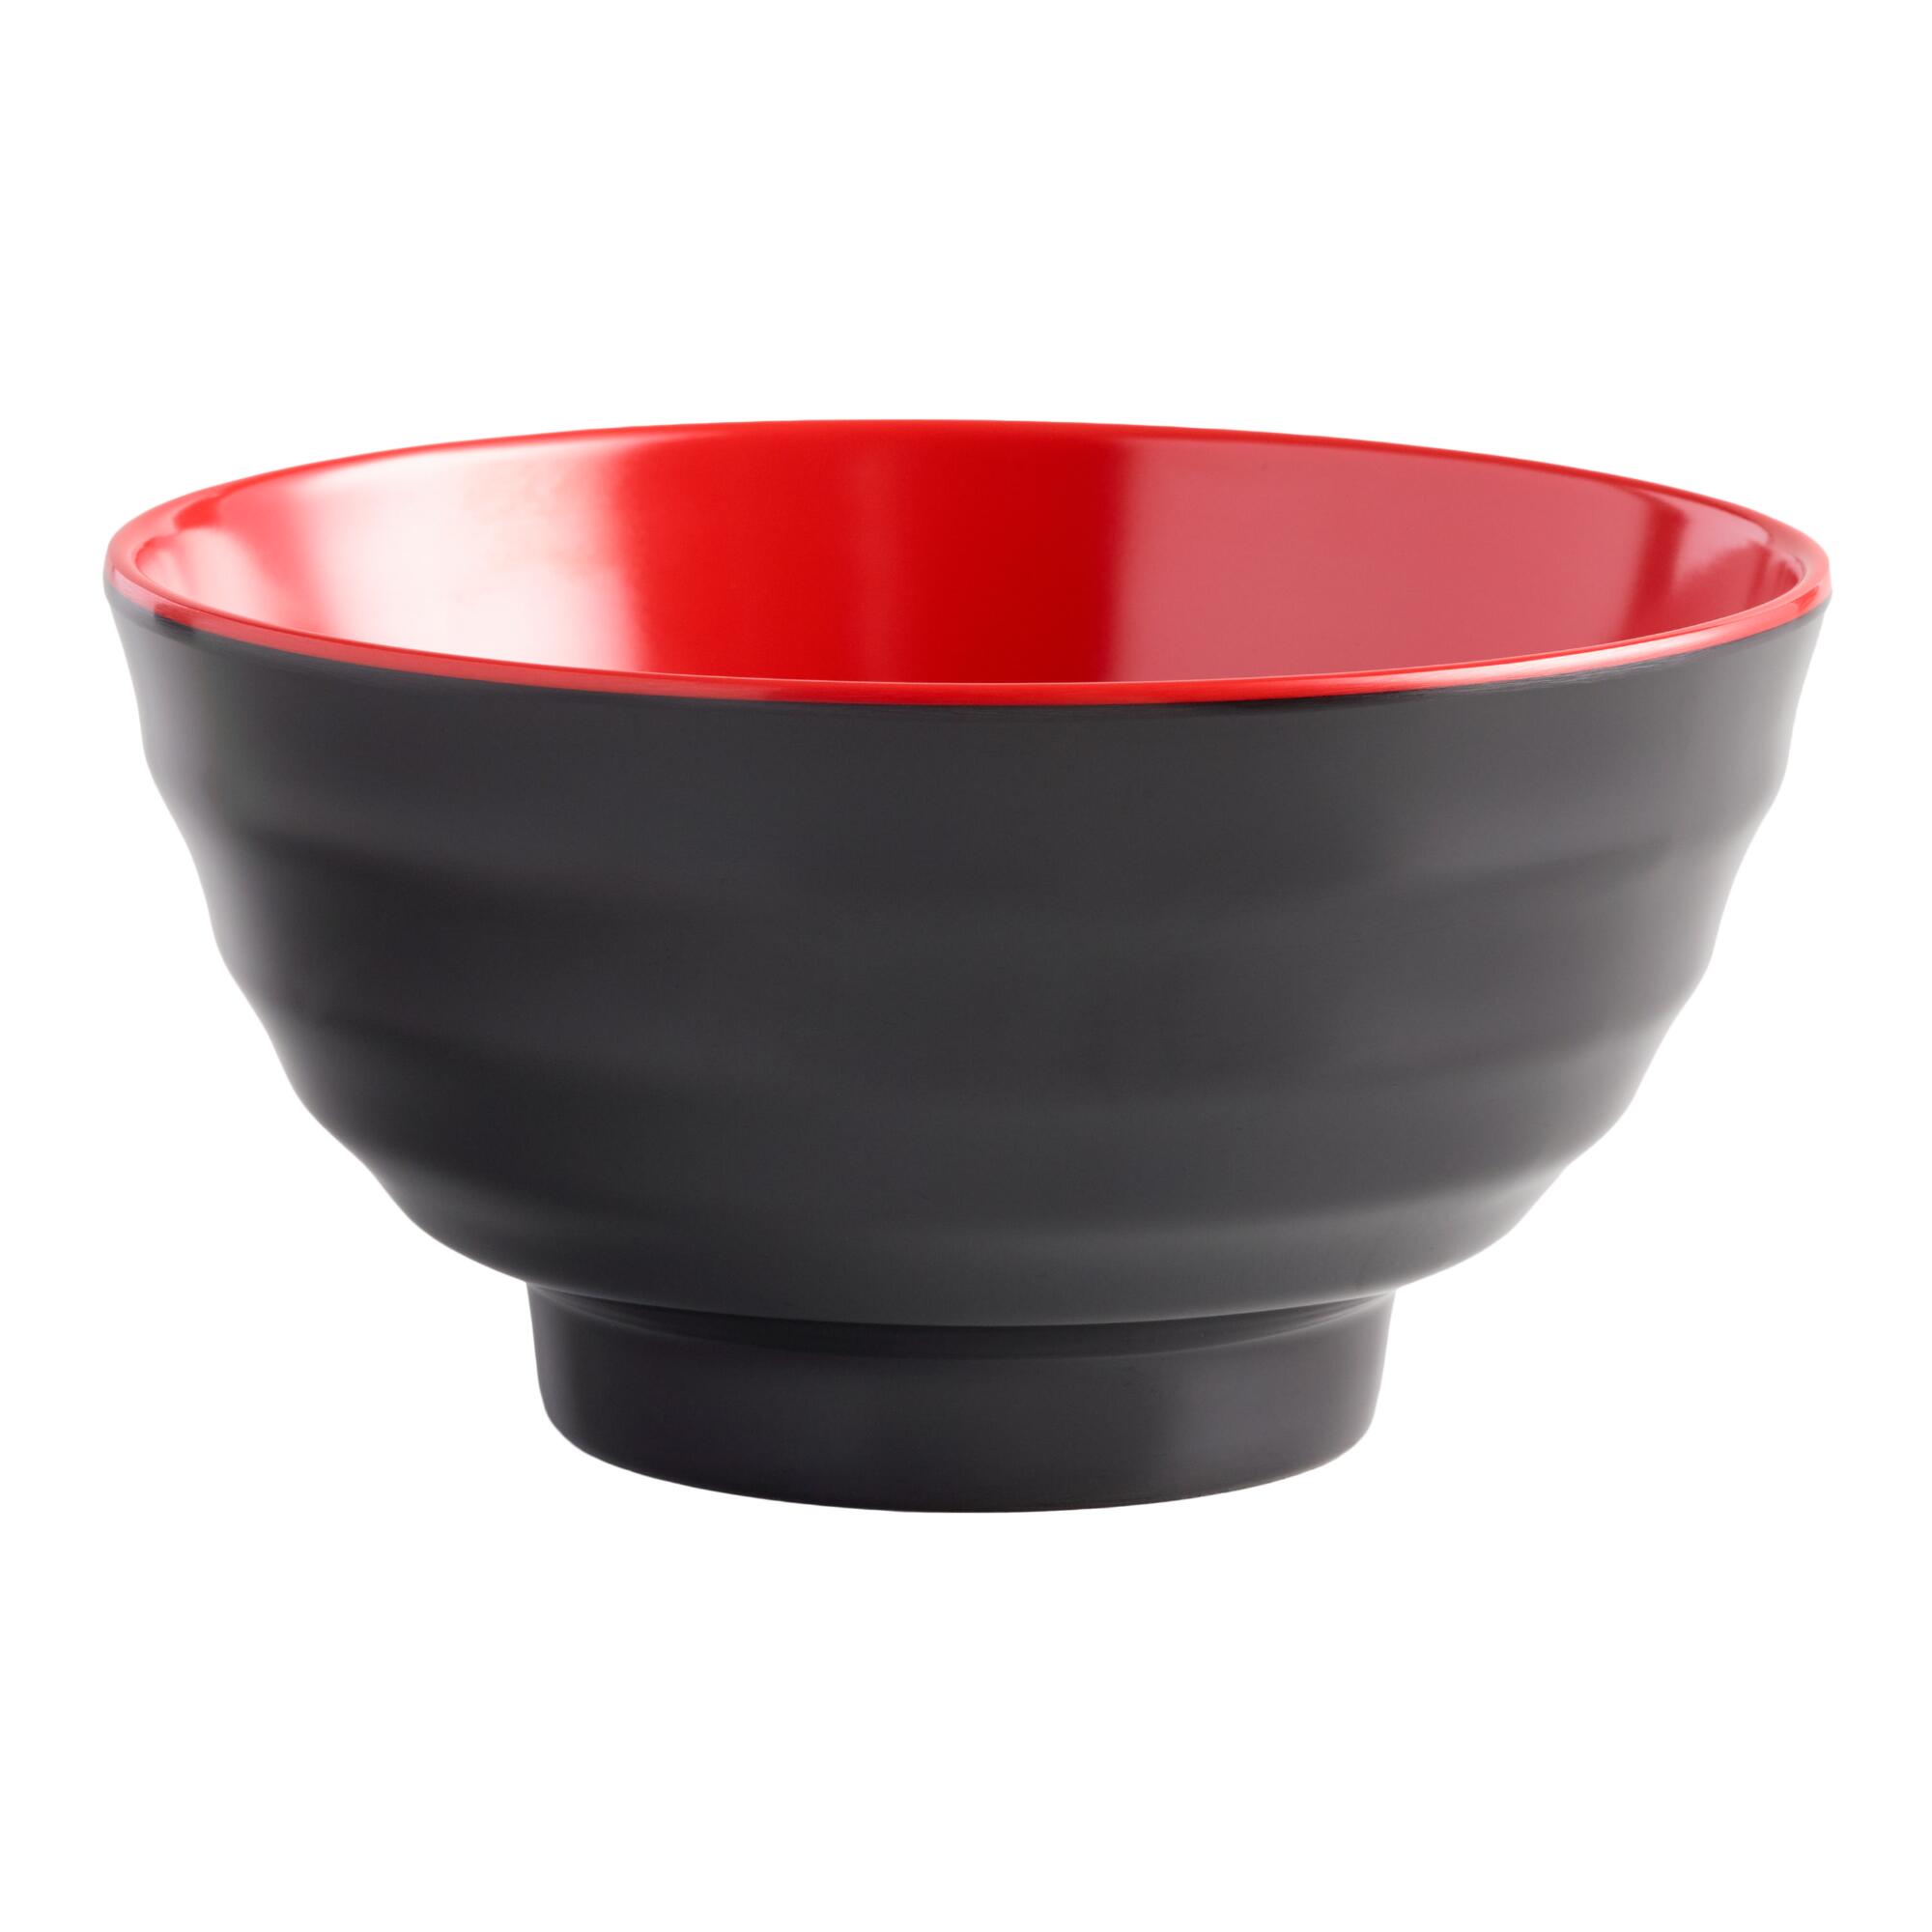 Black and Red Melamine Noodle Bowls Set of 4 by World Market